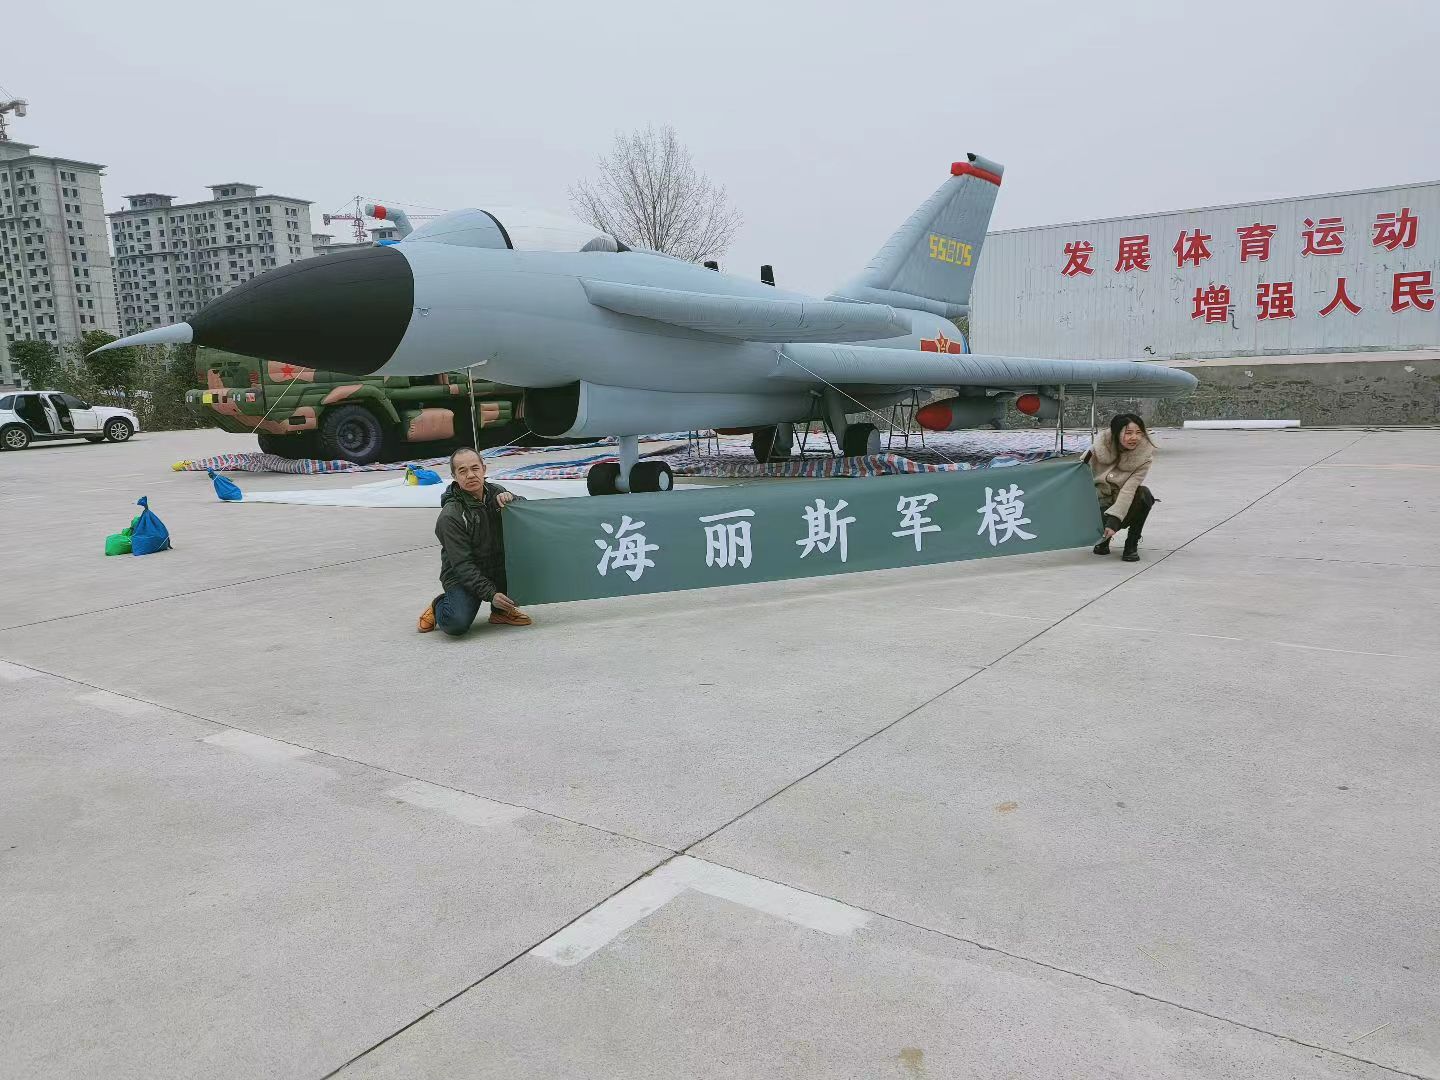 北京充气模型假目标的军事迷惑战术研究